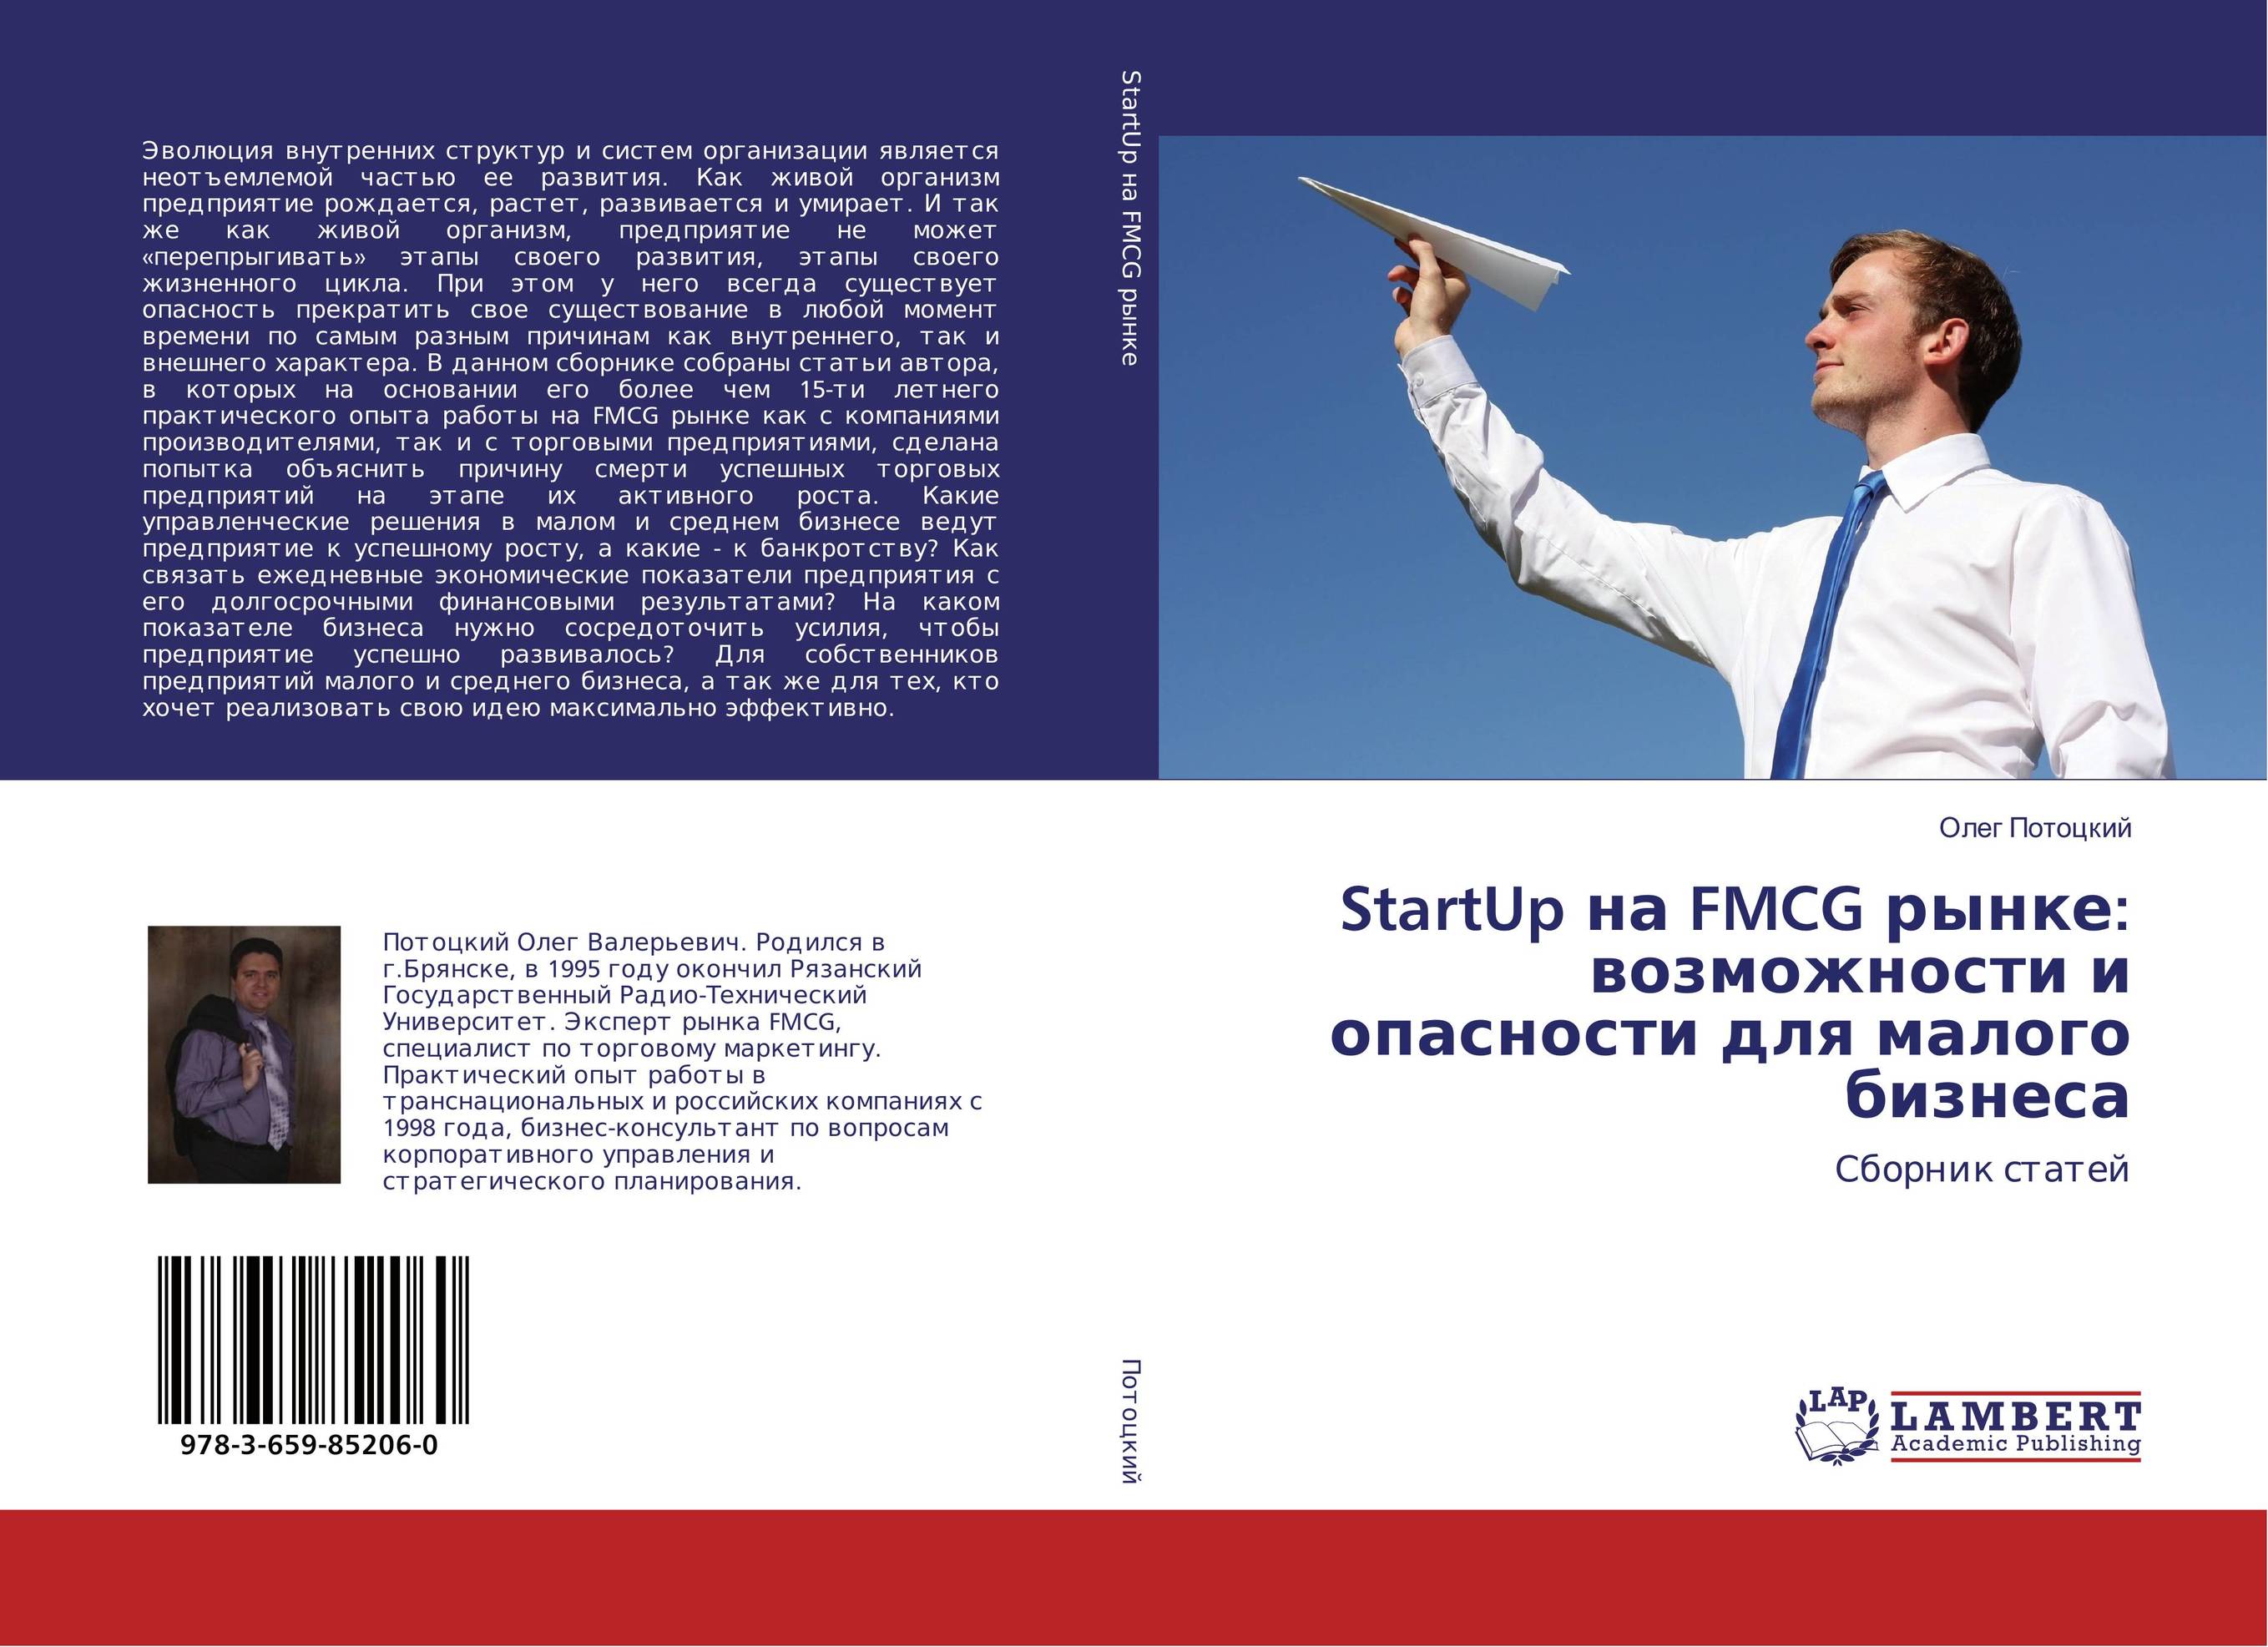 
        StartUp на FMCG рынке: возможности и опасности для малого бизнеса. Сборник статей.
      